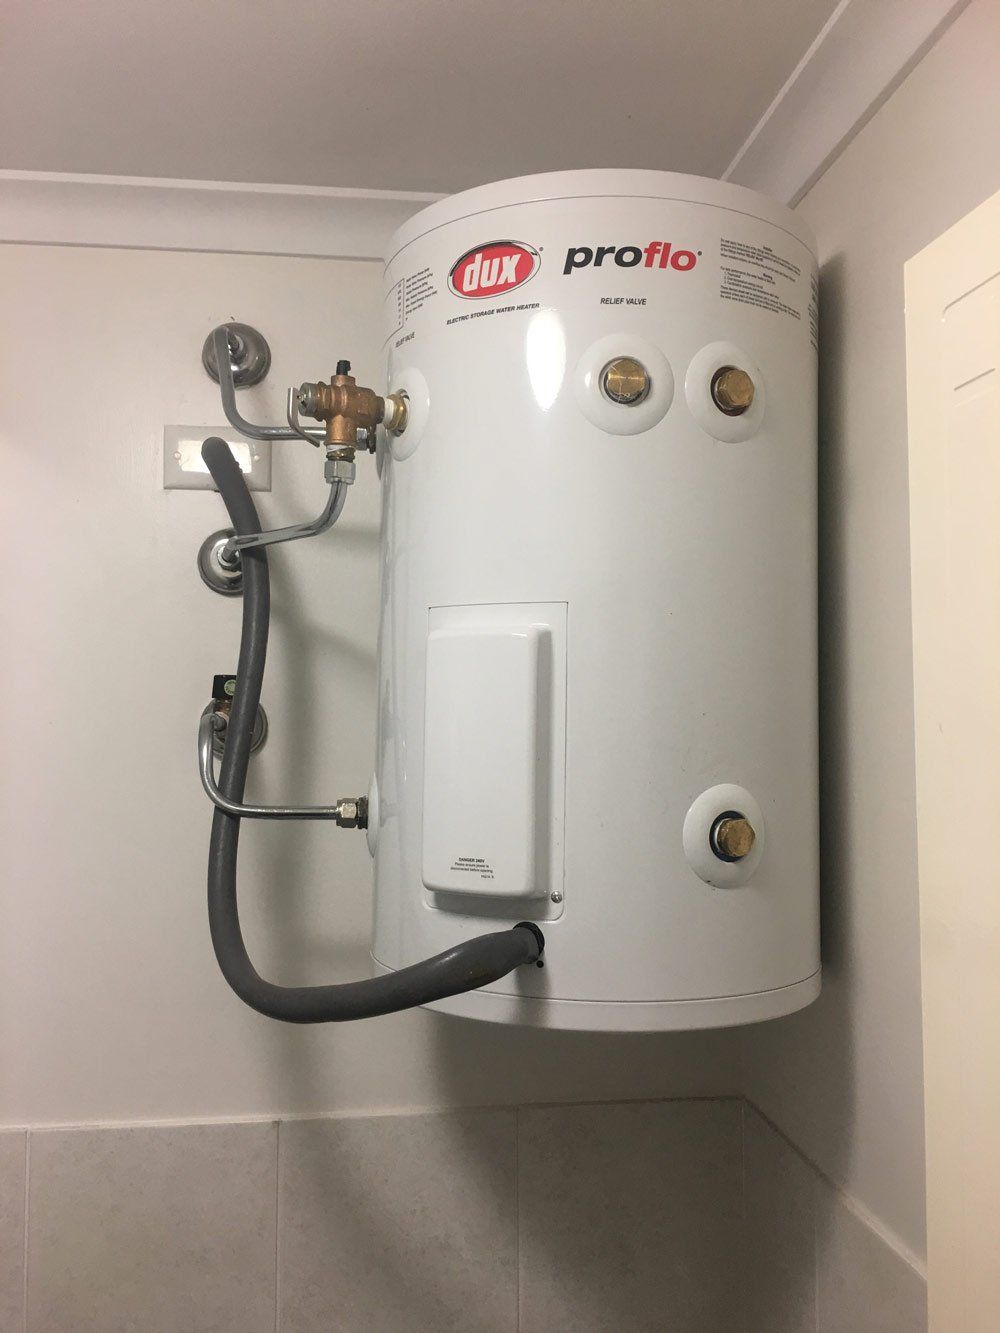 Dux Proflo Water Heater — Full On Plumbing & Gas In Winnellie NT